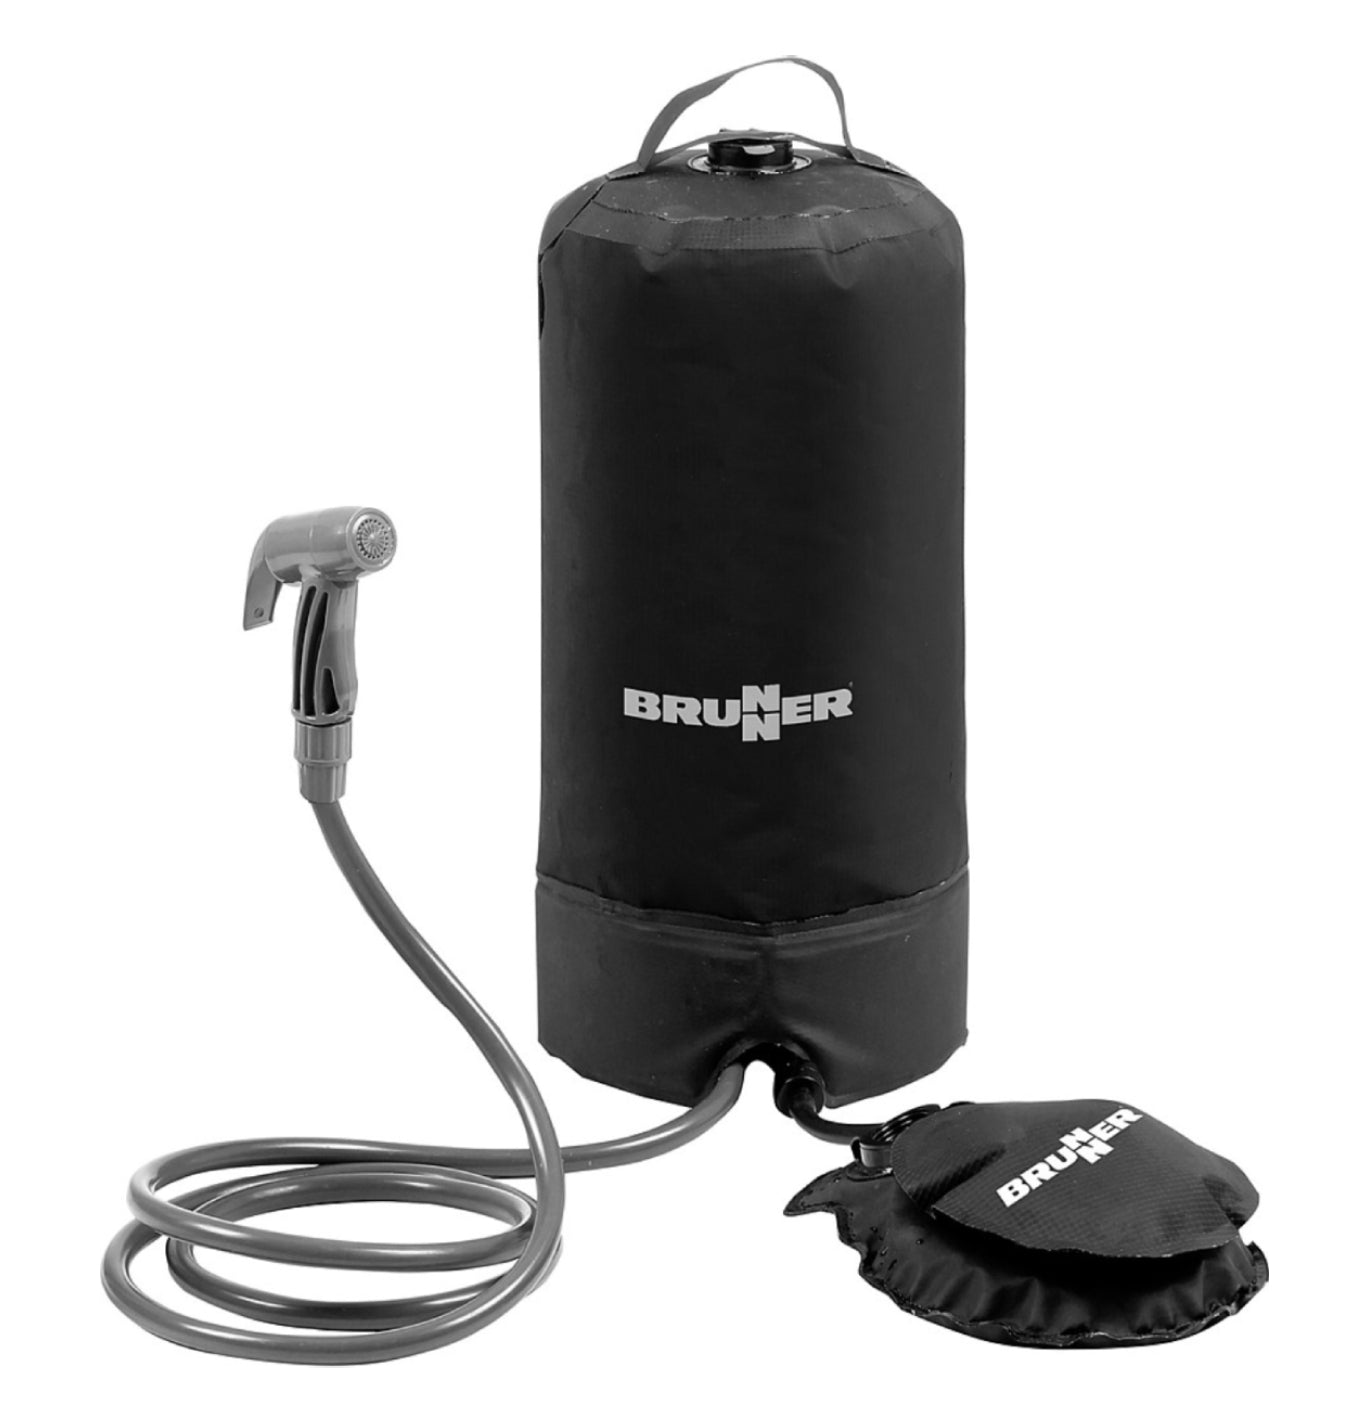 Brunner 15L Splash Outdoor Pressure Shower